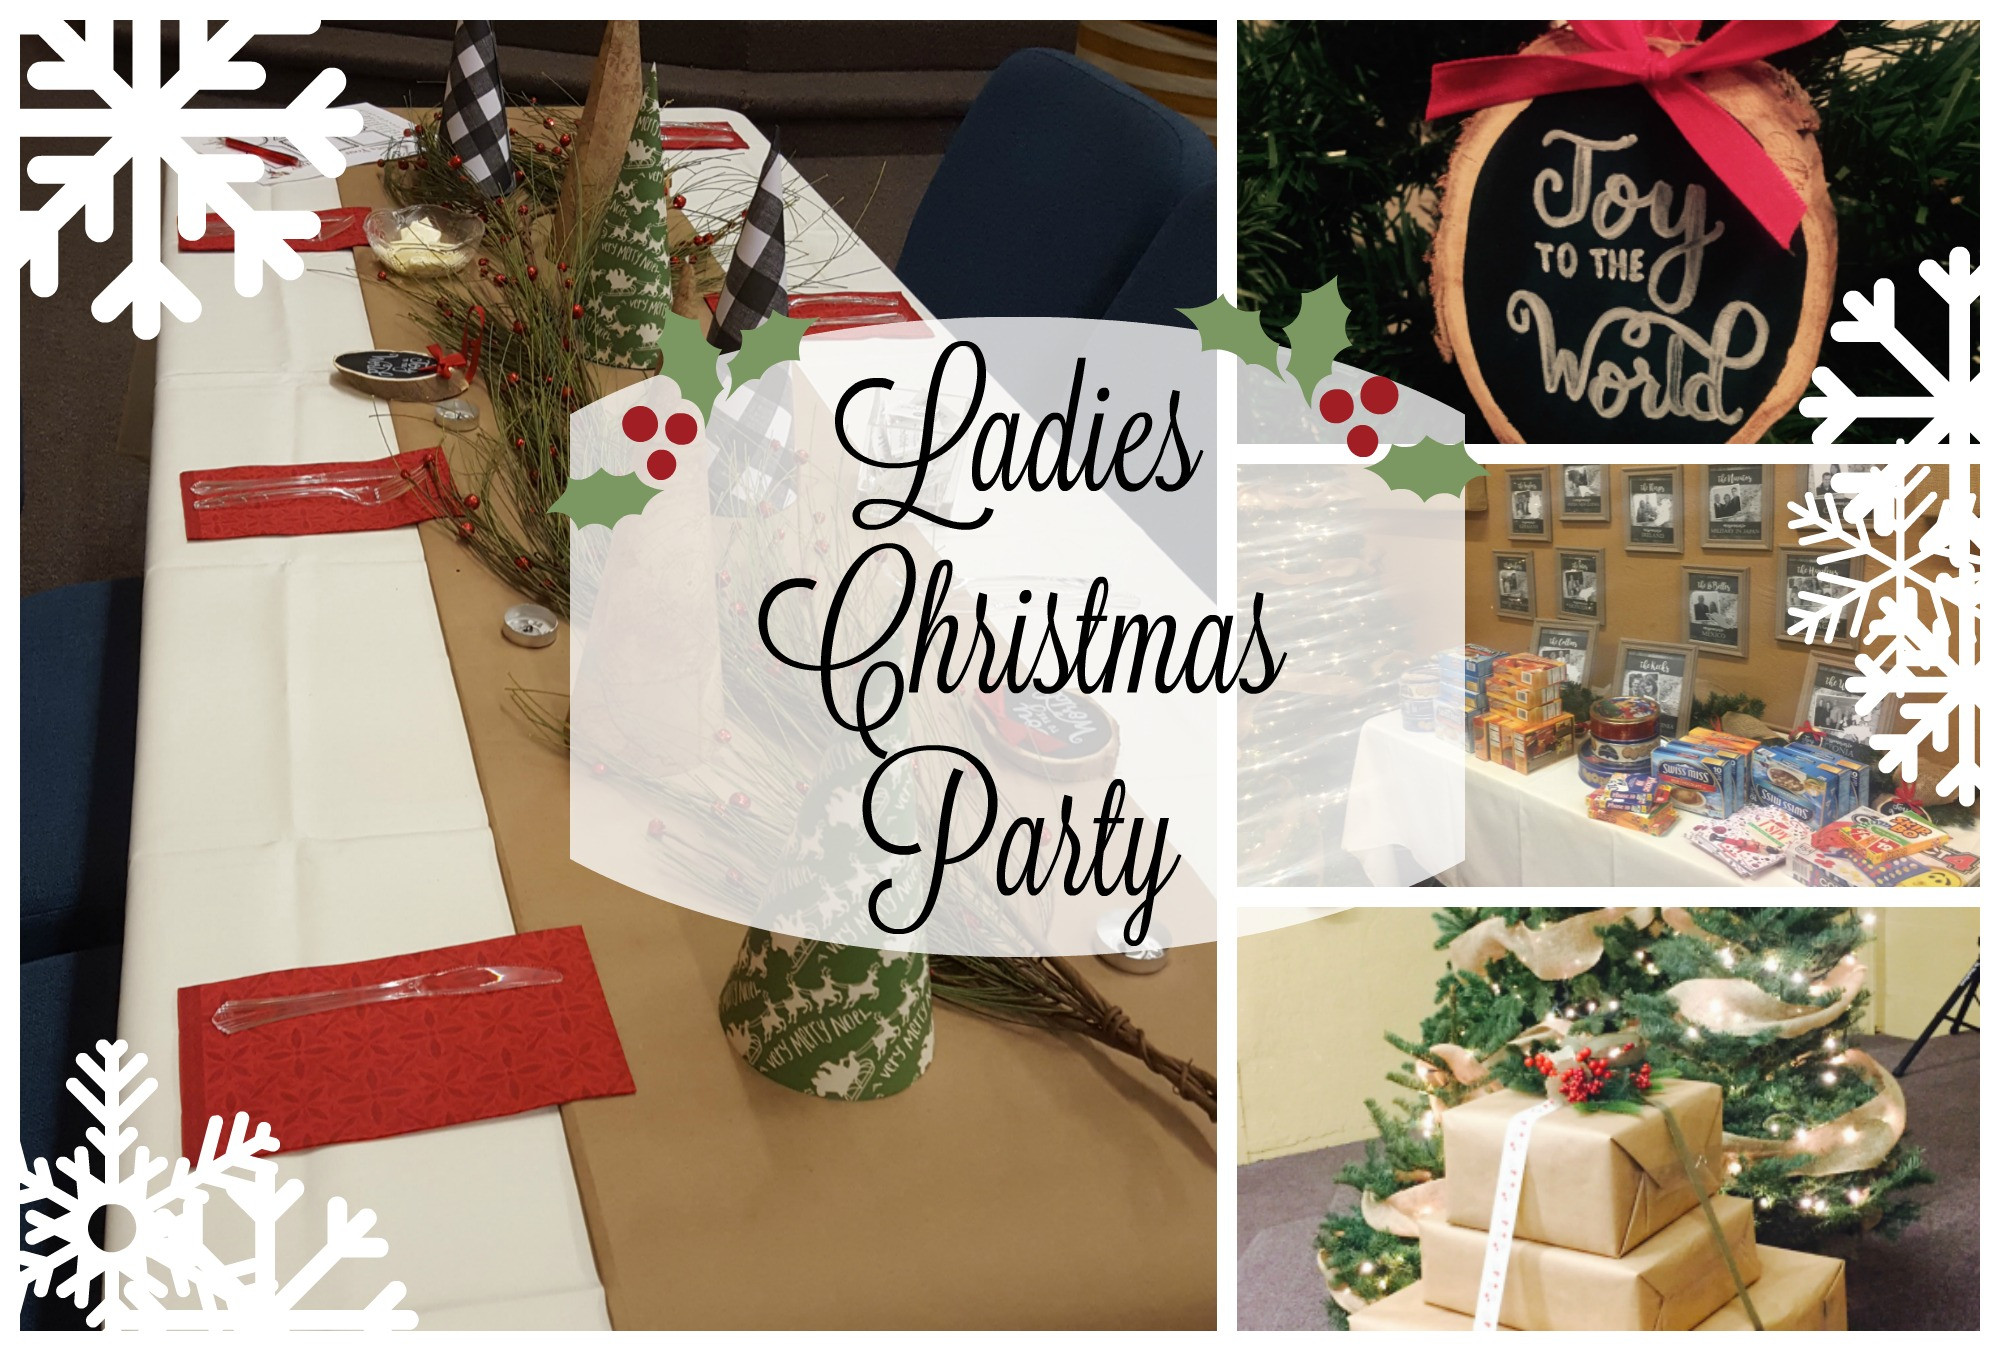 Ladies Christmas Party Ideas
 "Joy to the World" La s Christmas Party mon Mercies